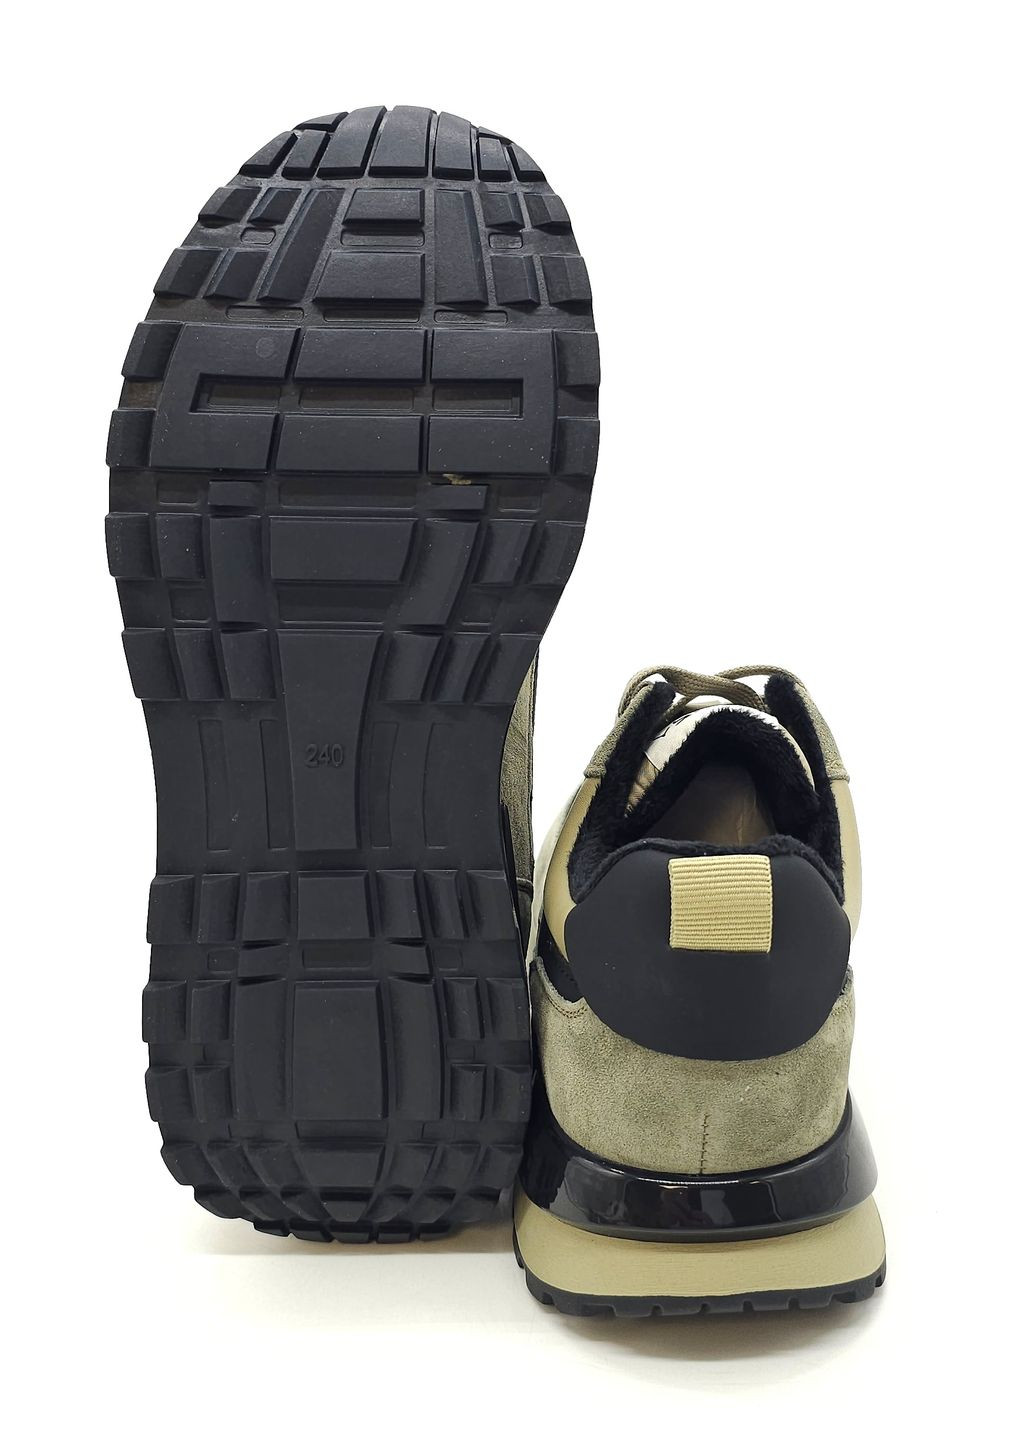 Оливковые (хаки) всесезонные женские кроссовки хаки кожаные l-10-34 23 см(р) Lonza